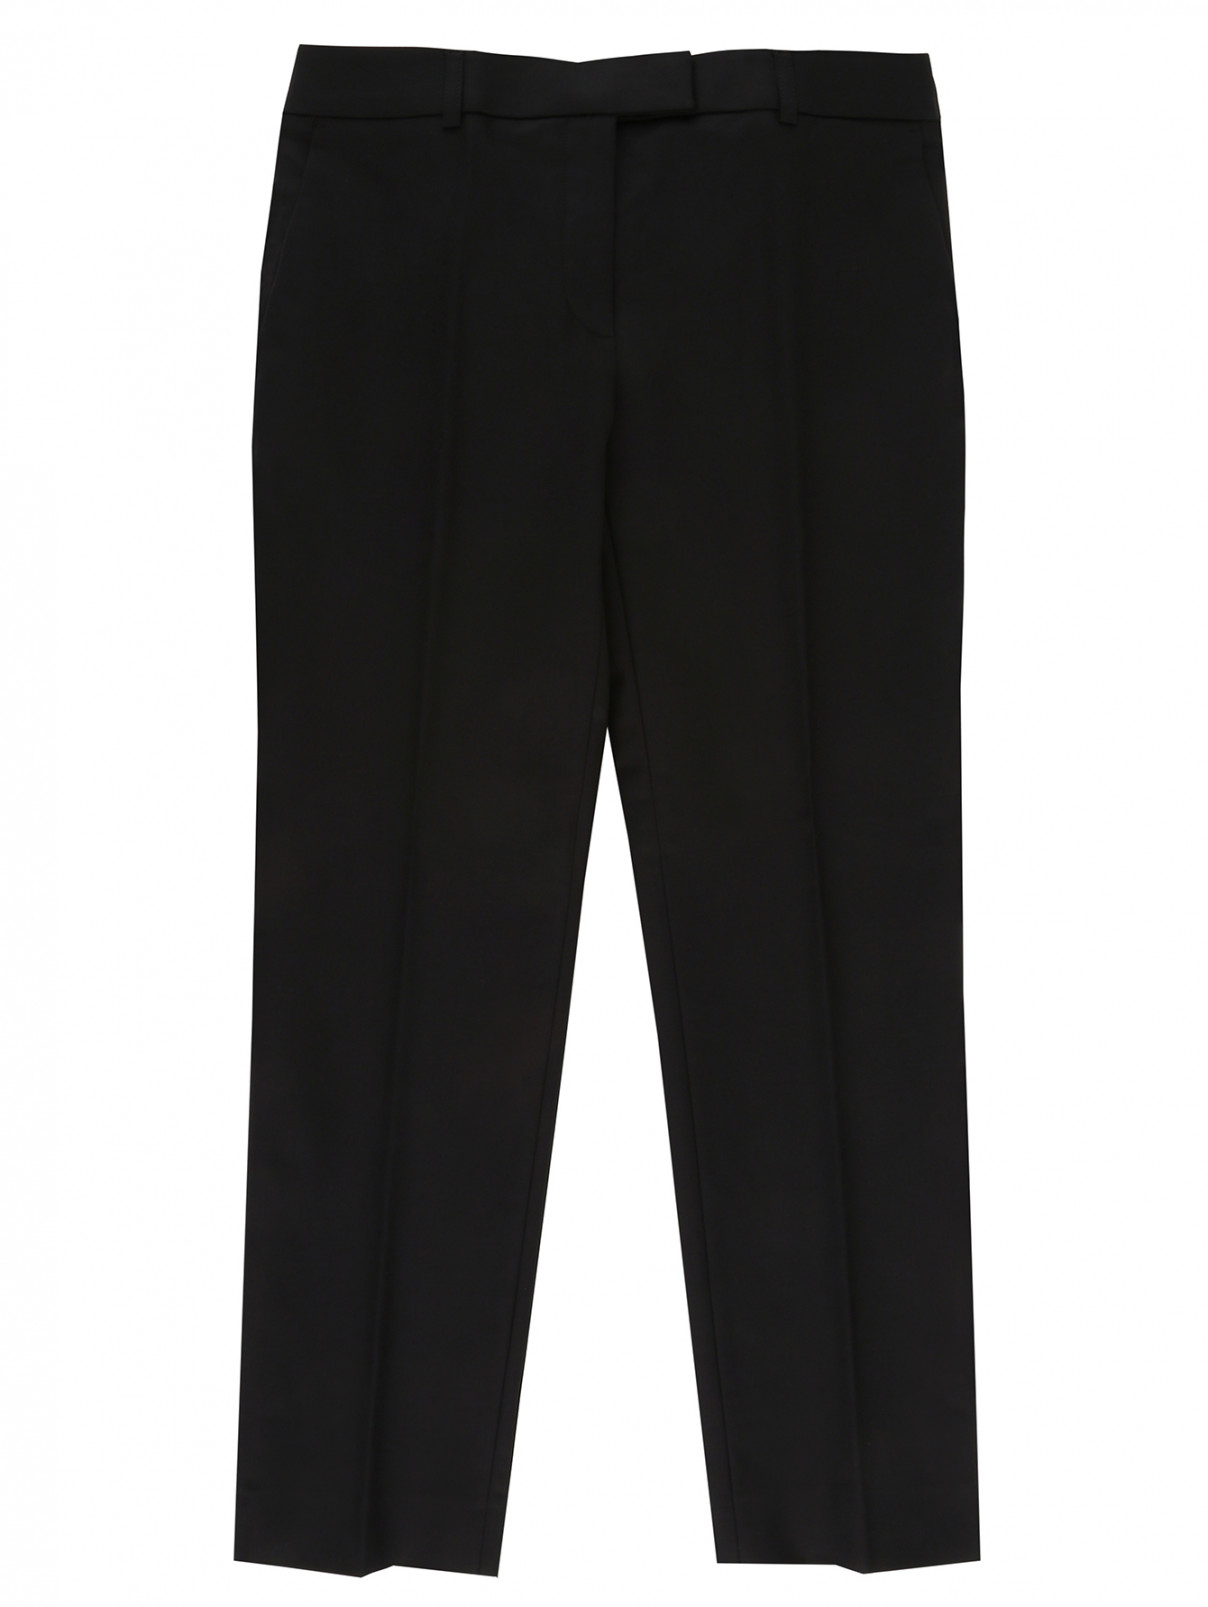 Укороченные прямые брюки из хлопка Moschino Cheap&Chic  –  Общий вид  – Цвет:  Черный